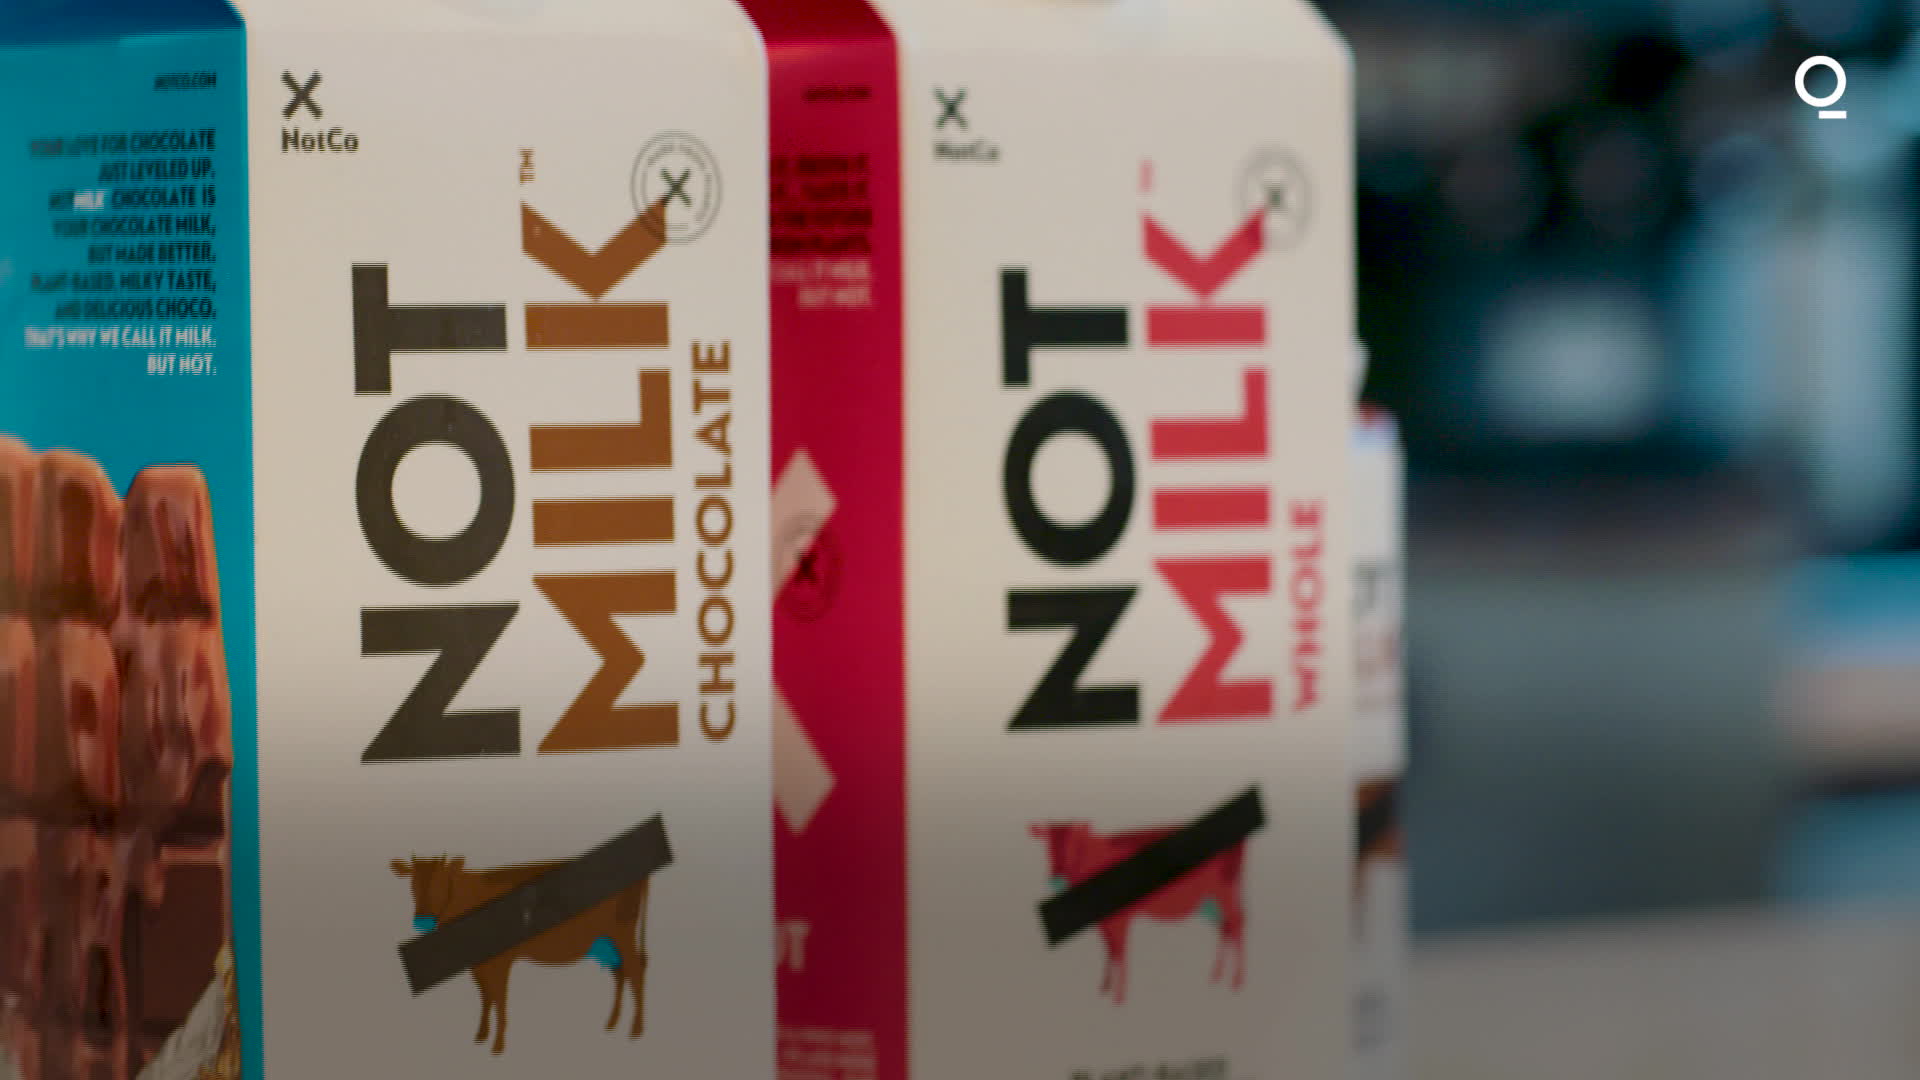 Vegan Deli Meat Startup Plantcraft Launches Clean Label Plant-Based Pâté  Line